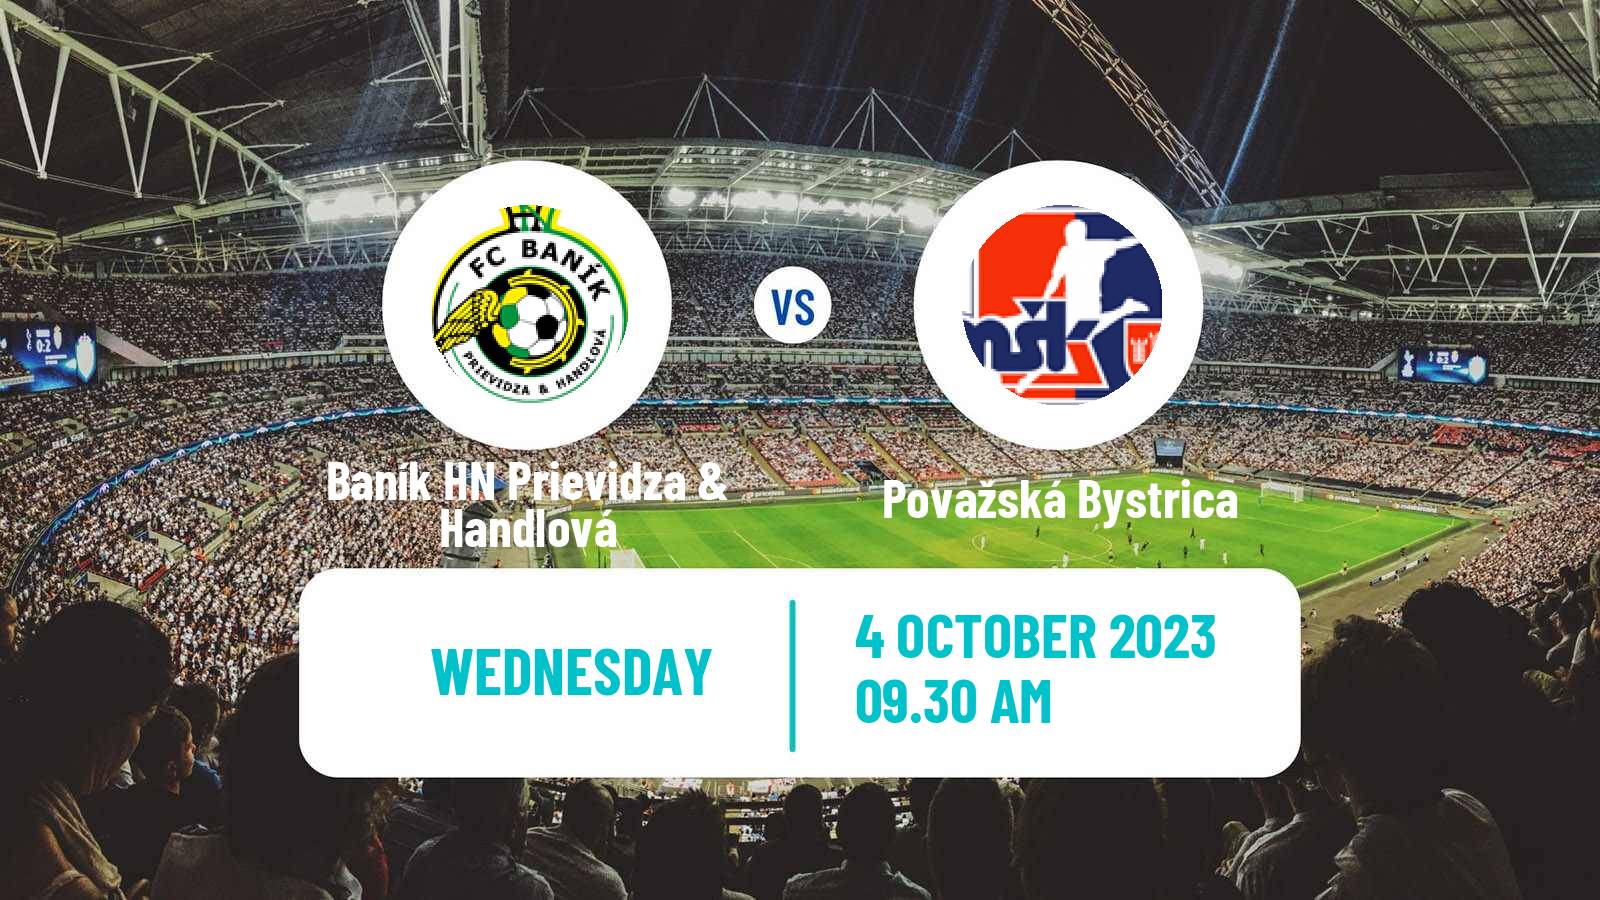 Soccer Slovak Cup Baník HN Prievidza & Handlová - Považská Bystrica